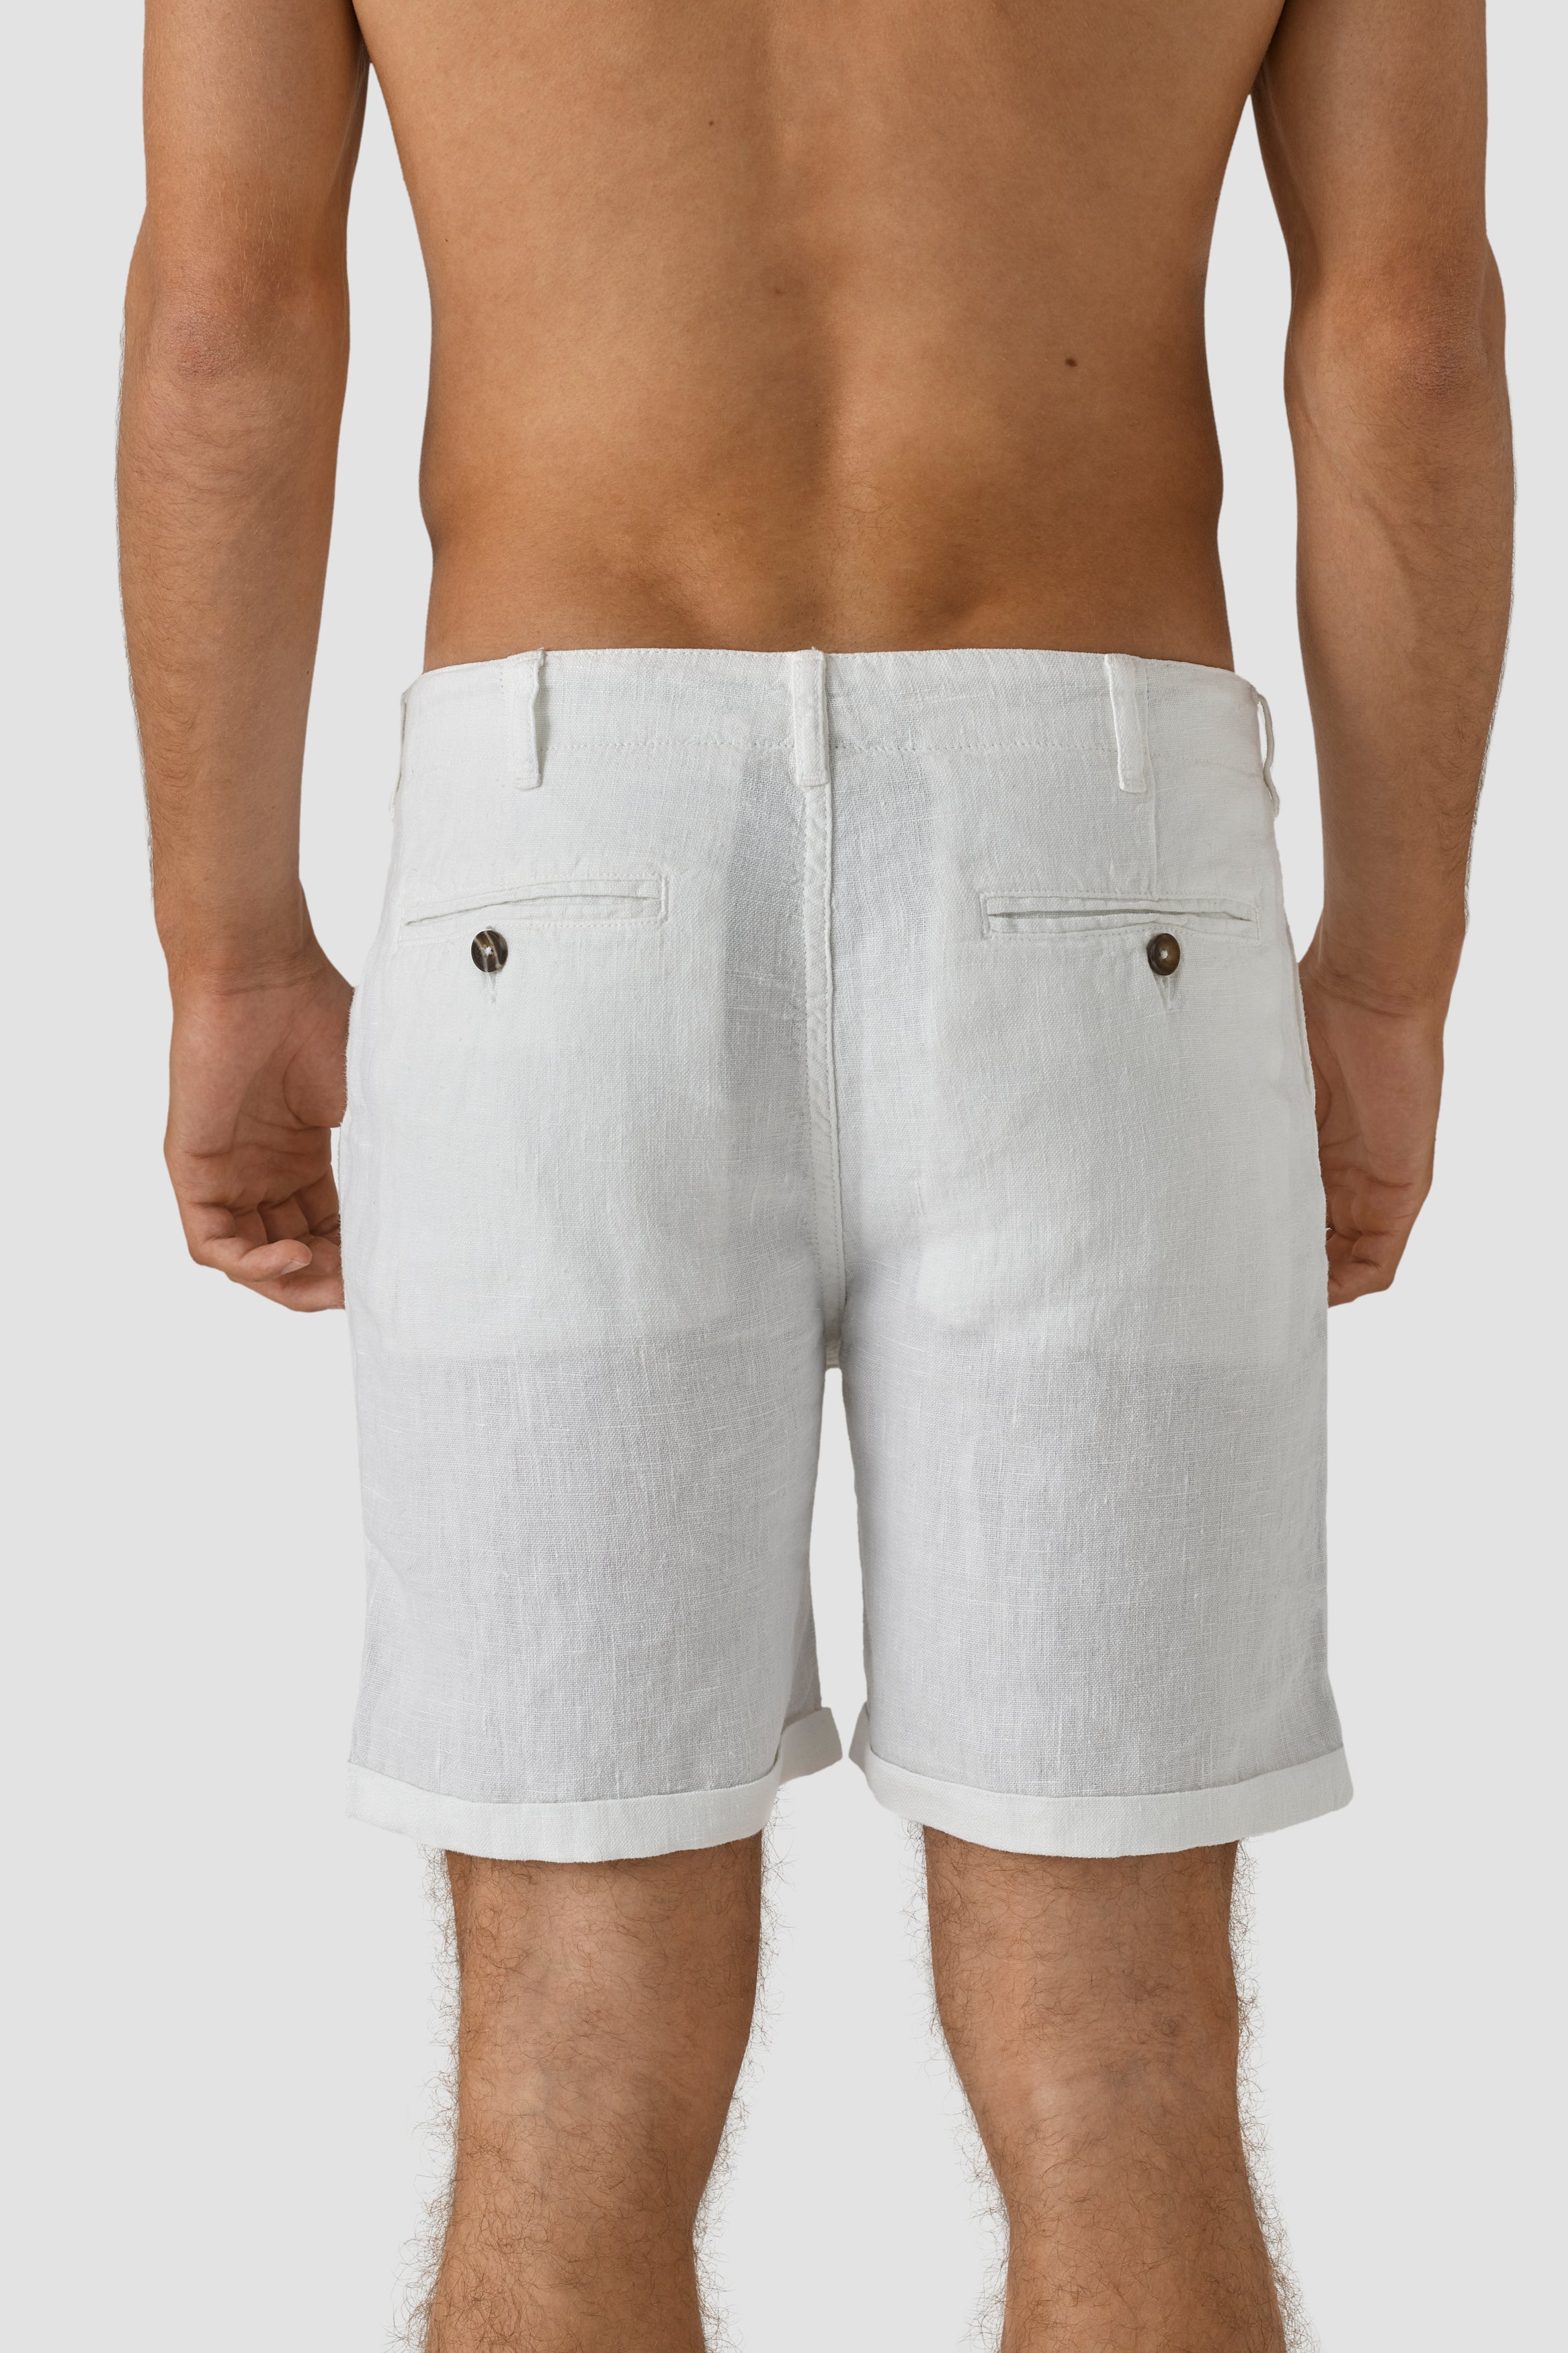 Mr Tanger Shorts White